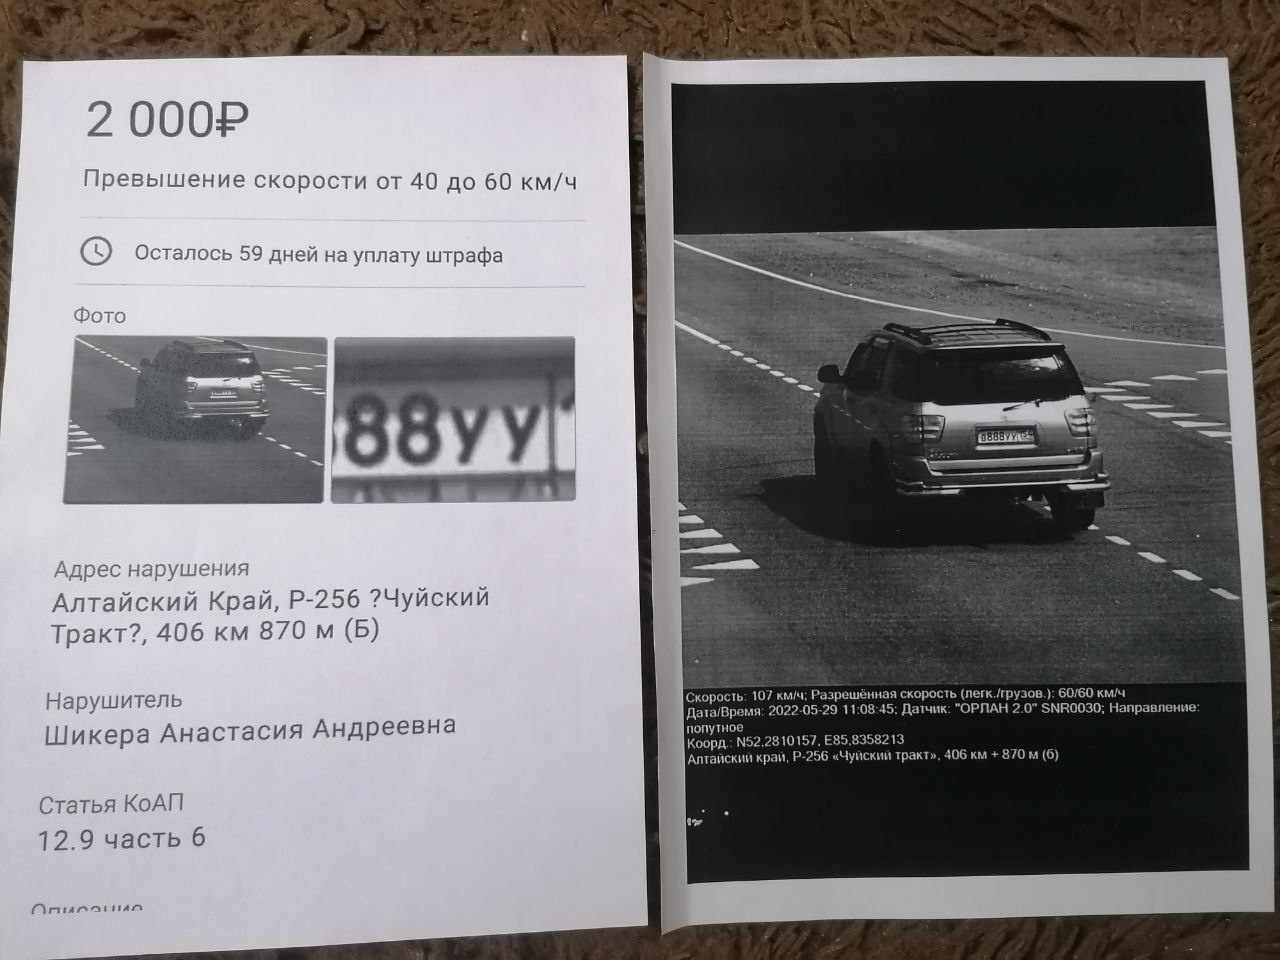 После объявления машины в розыск Анастасии пришел штраф на автомобиль из Алтайского края